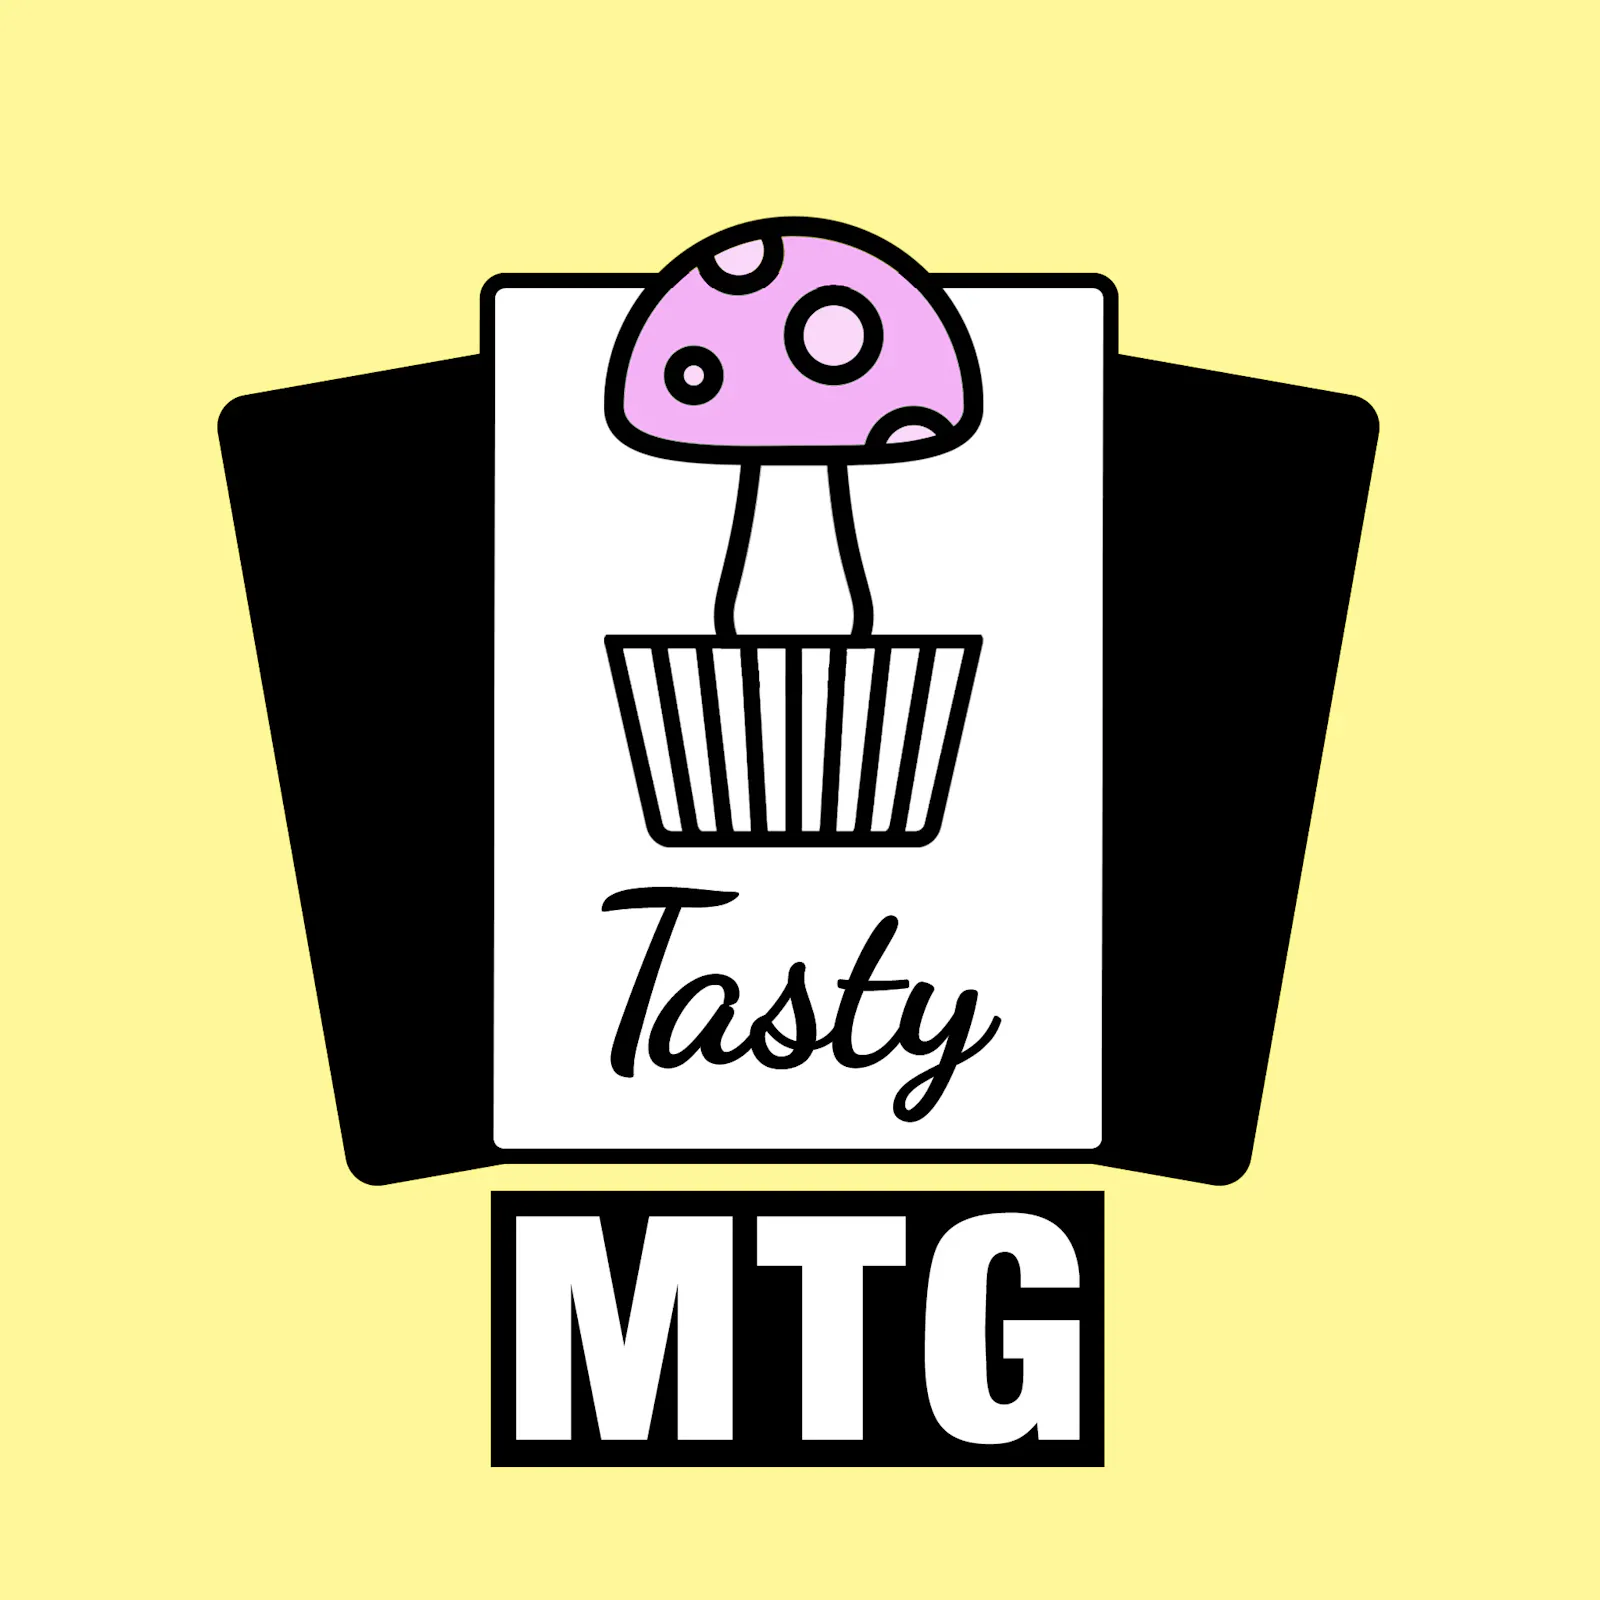 Das Logo zur neuen Folge: Der Tasty-MTG-Muffin ist ein Pilz